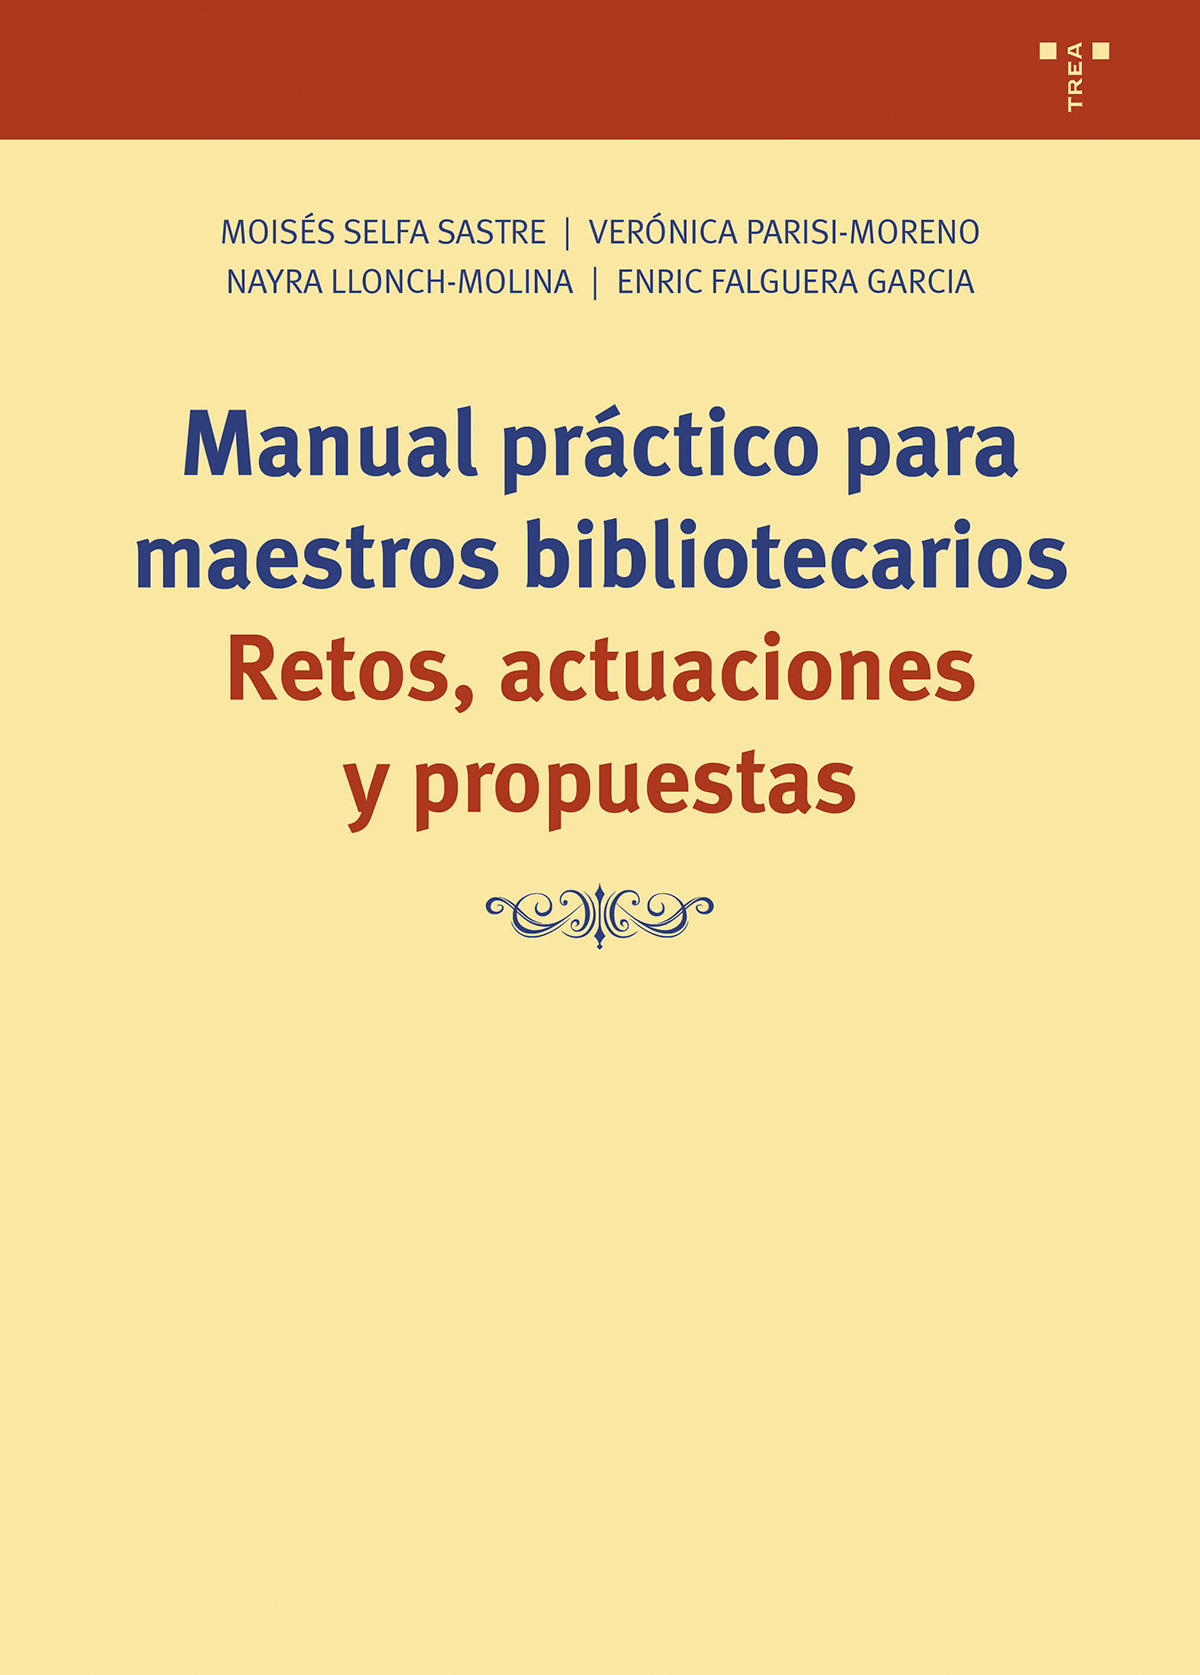 Manual práctico maestros bibliotecarios -9788419525055